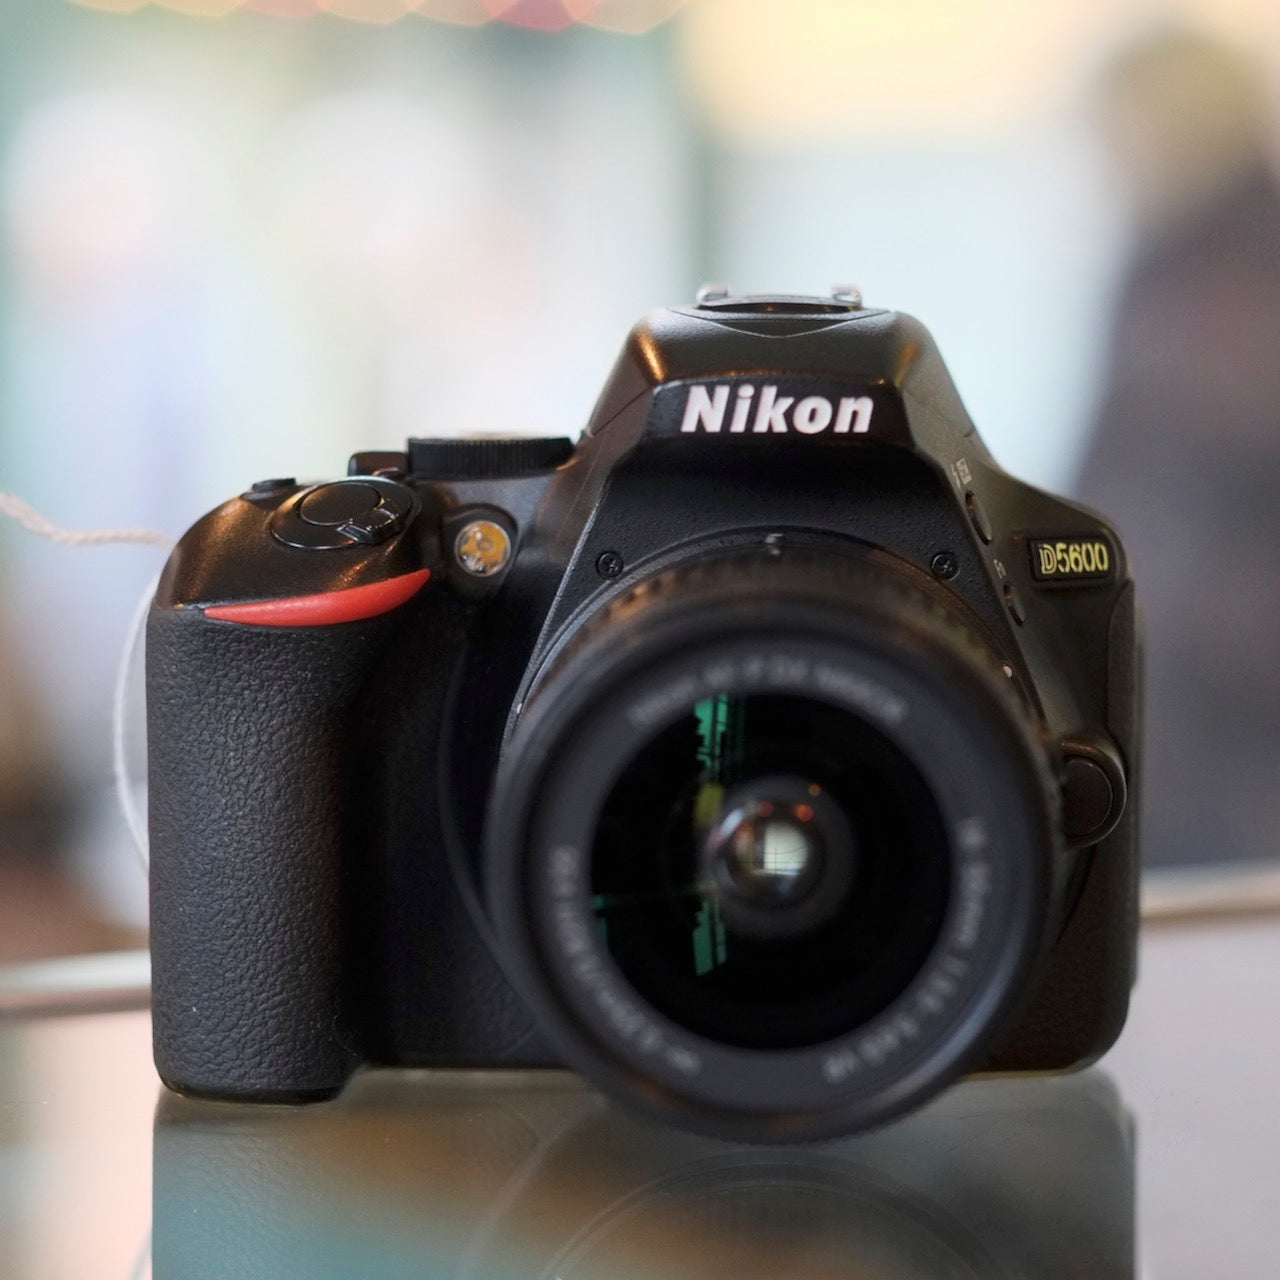 Nikon D5600 with 18-55mm f3.5-5.6G AF-P Nikkor